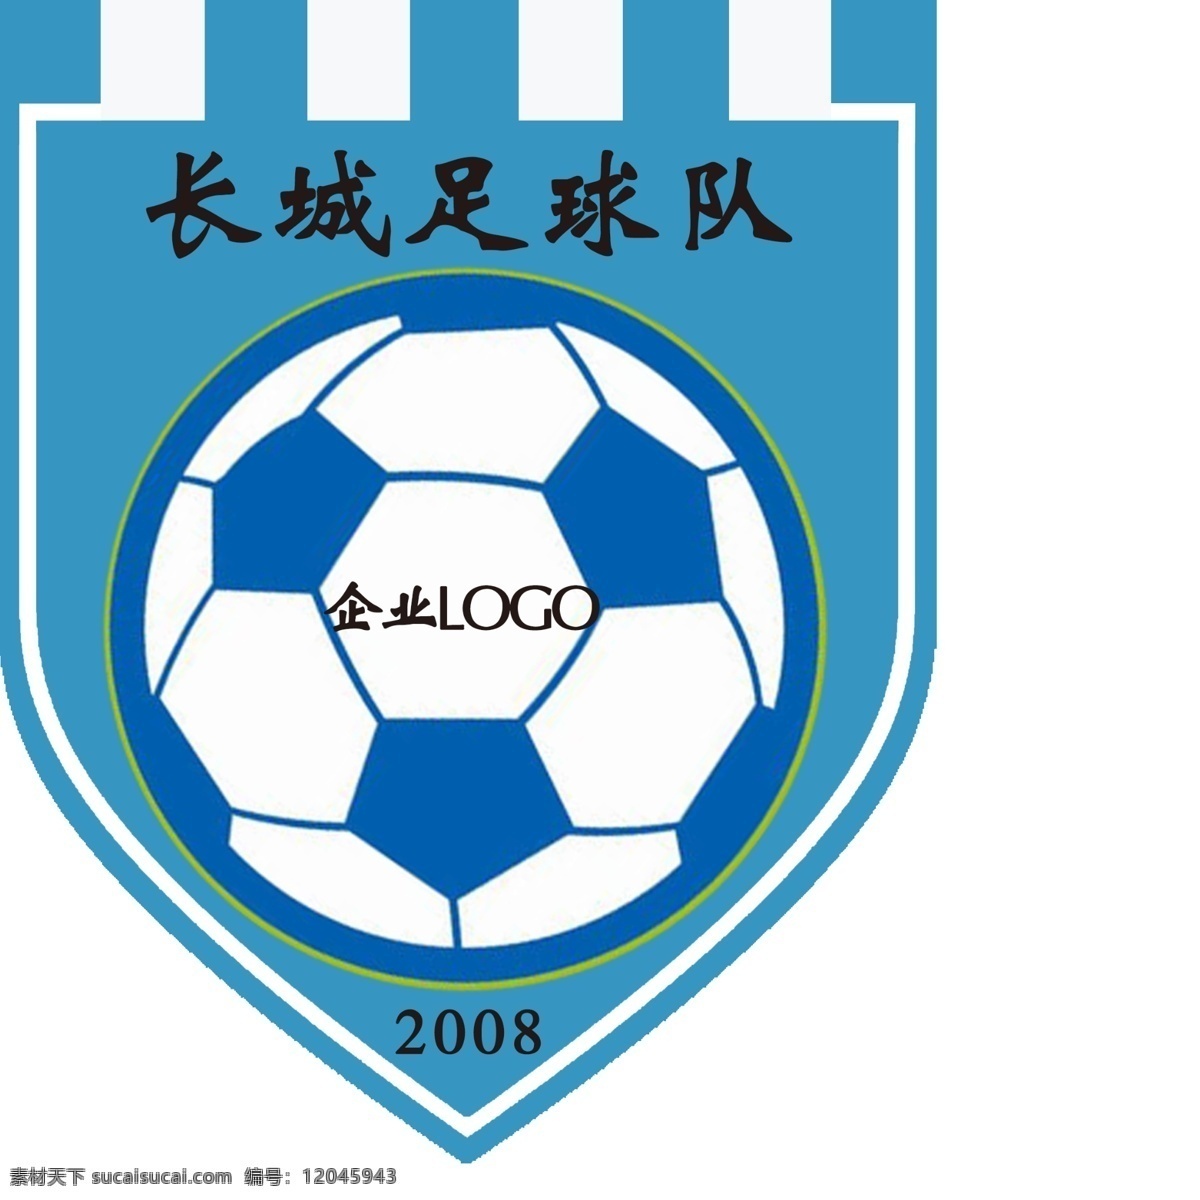 足球 俱乐部队 徽 俱乐部 球队 logo logo设计